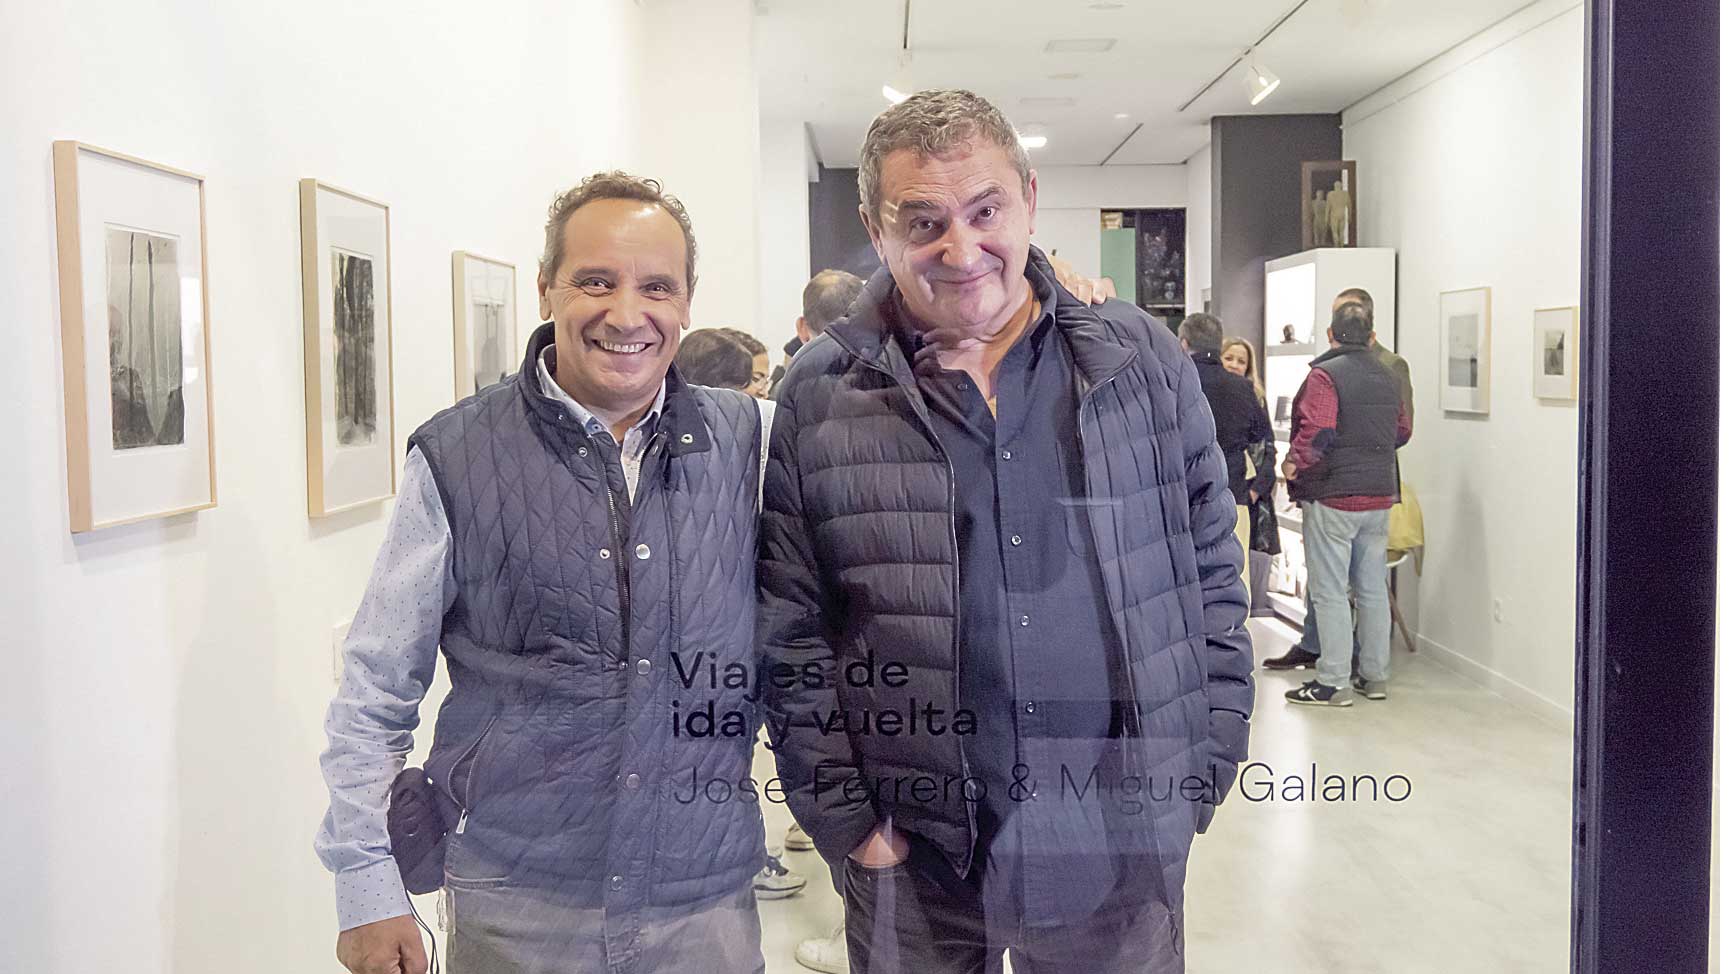 José Ferrero y Miguel Galano el pasado jueves en la inauguración de la muestra en la galería Ármaga. | VICENTE GARCÍA